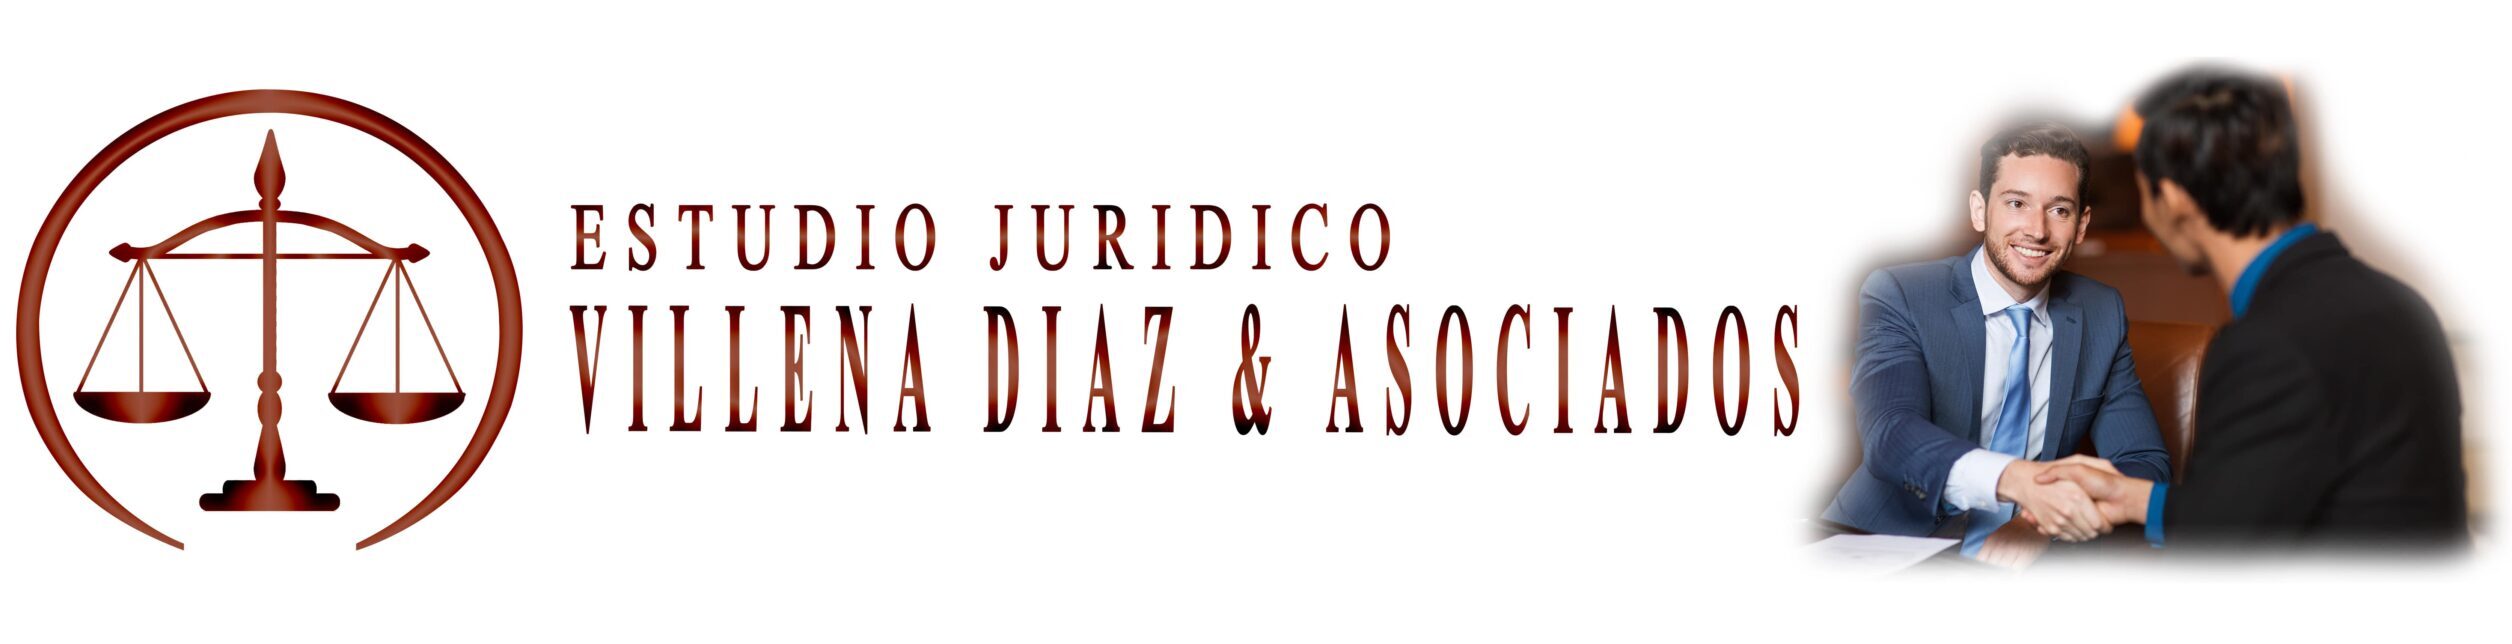 Estudio Jurídico Villena, Díaz & Asociados